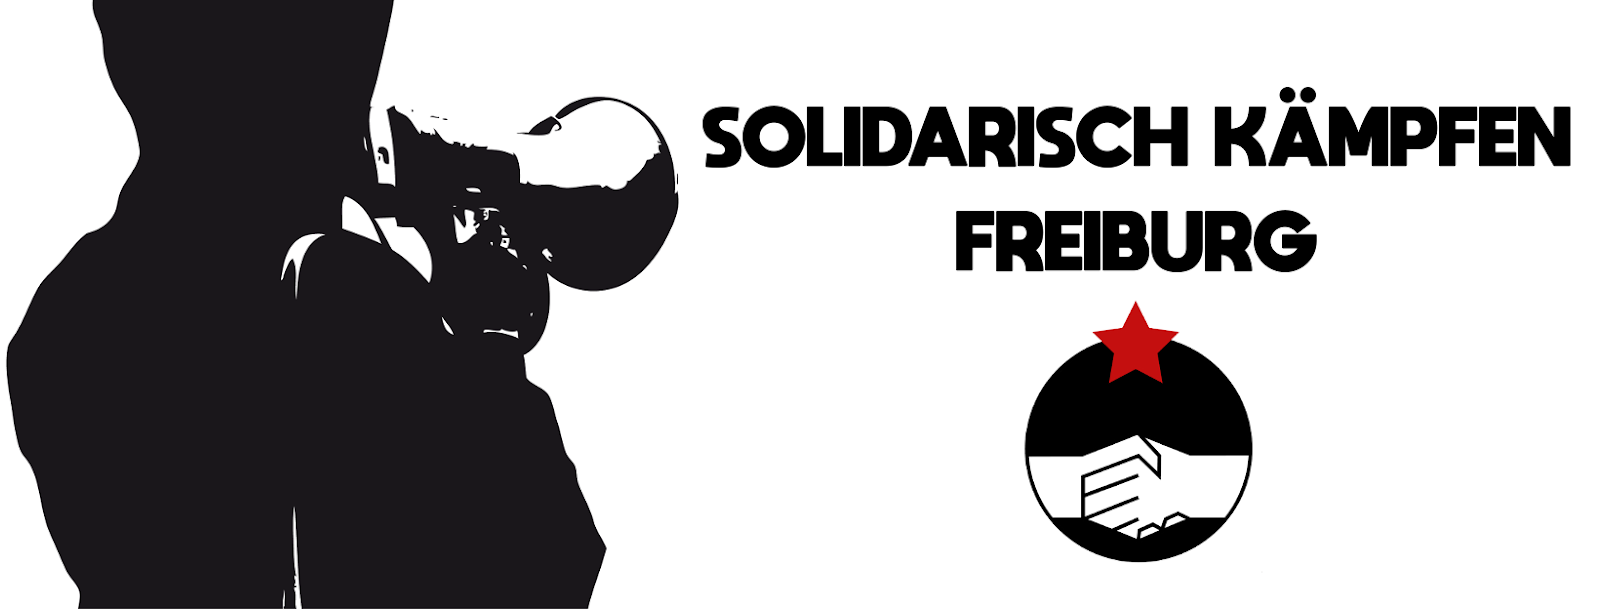 Solidarisch Kämpfen Freiburg